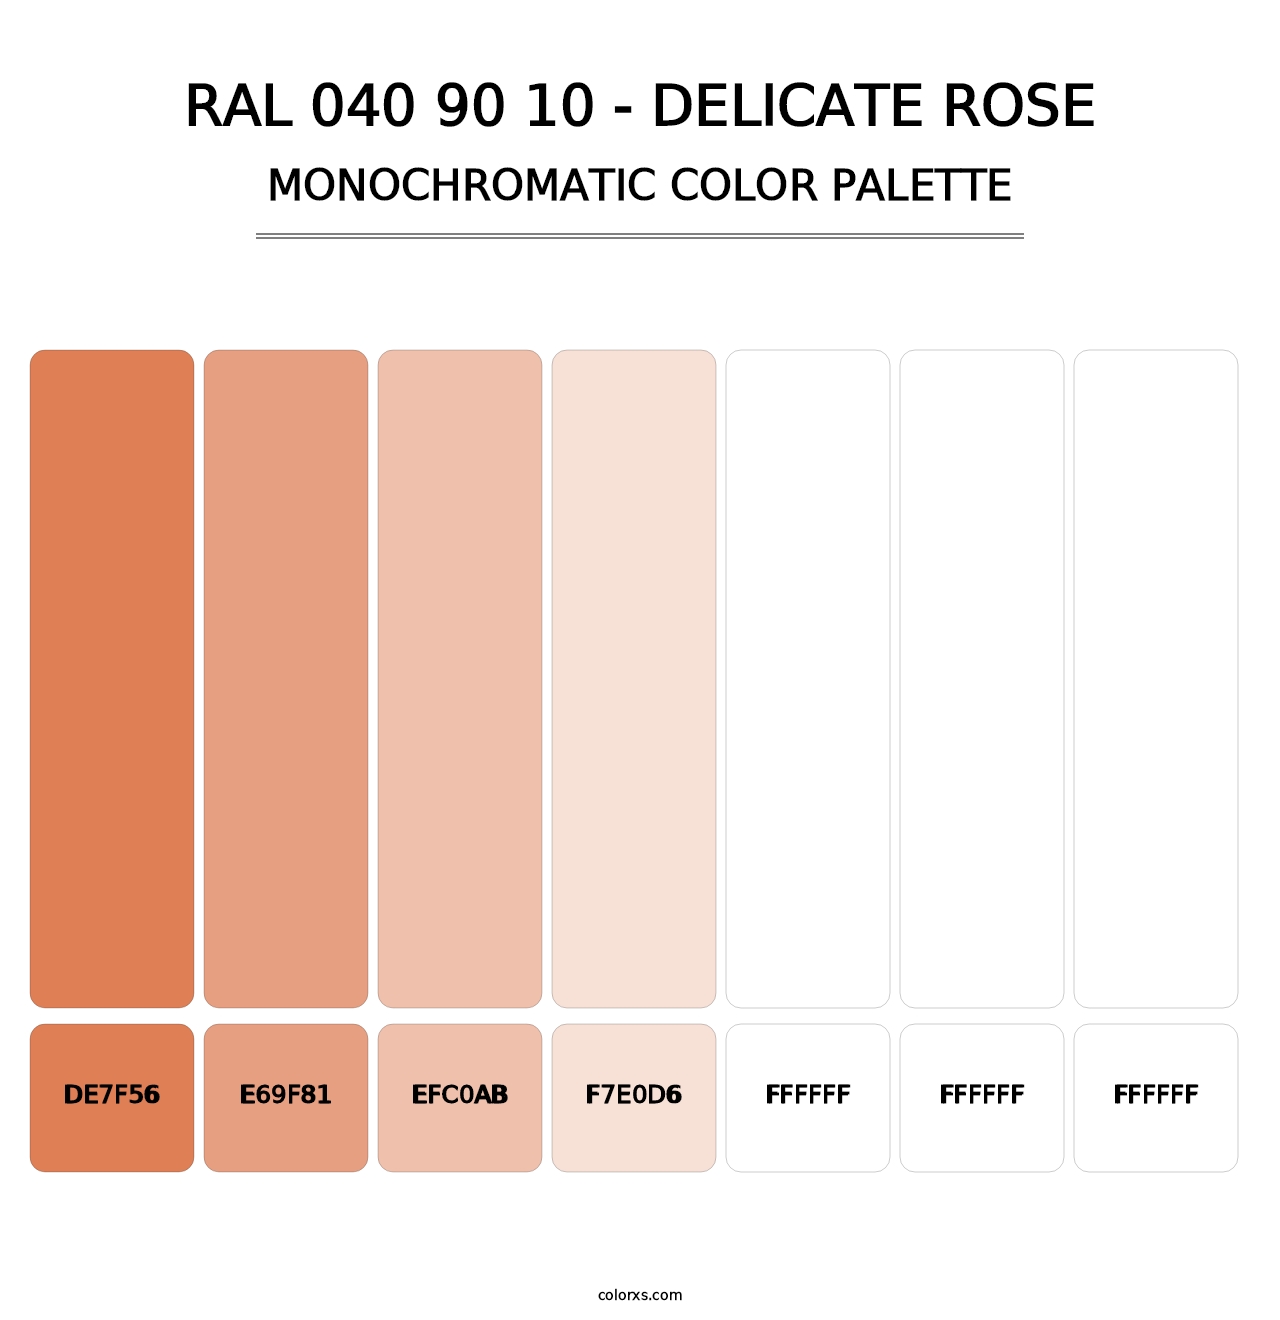 RAL 040 90 10 - Delicate Rose - Monochromatic Color Palette